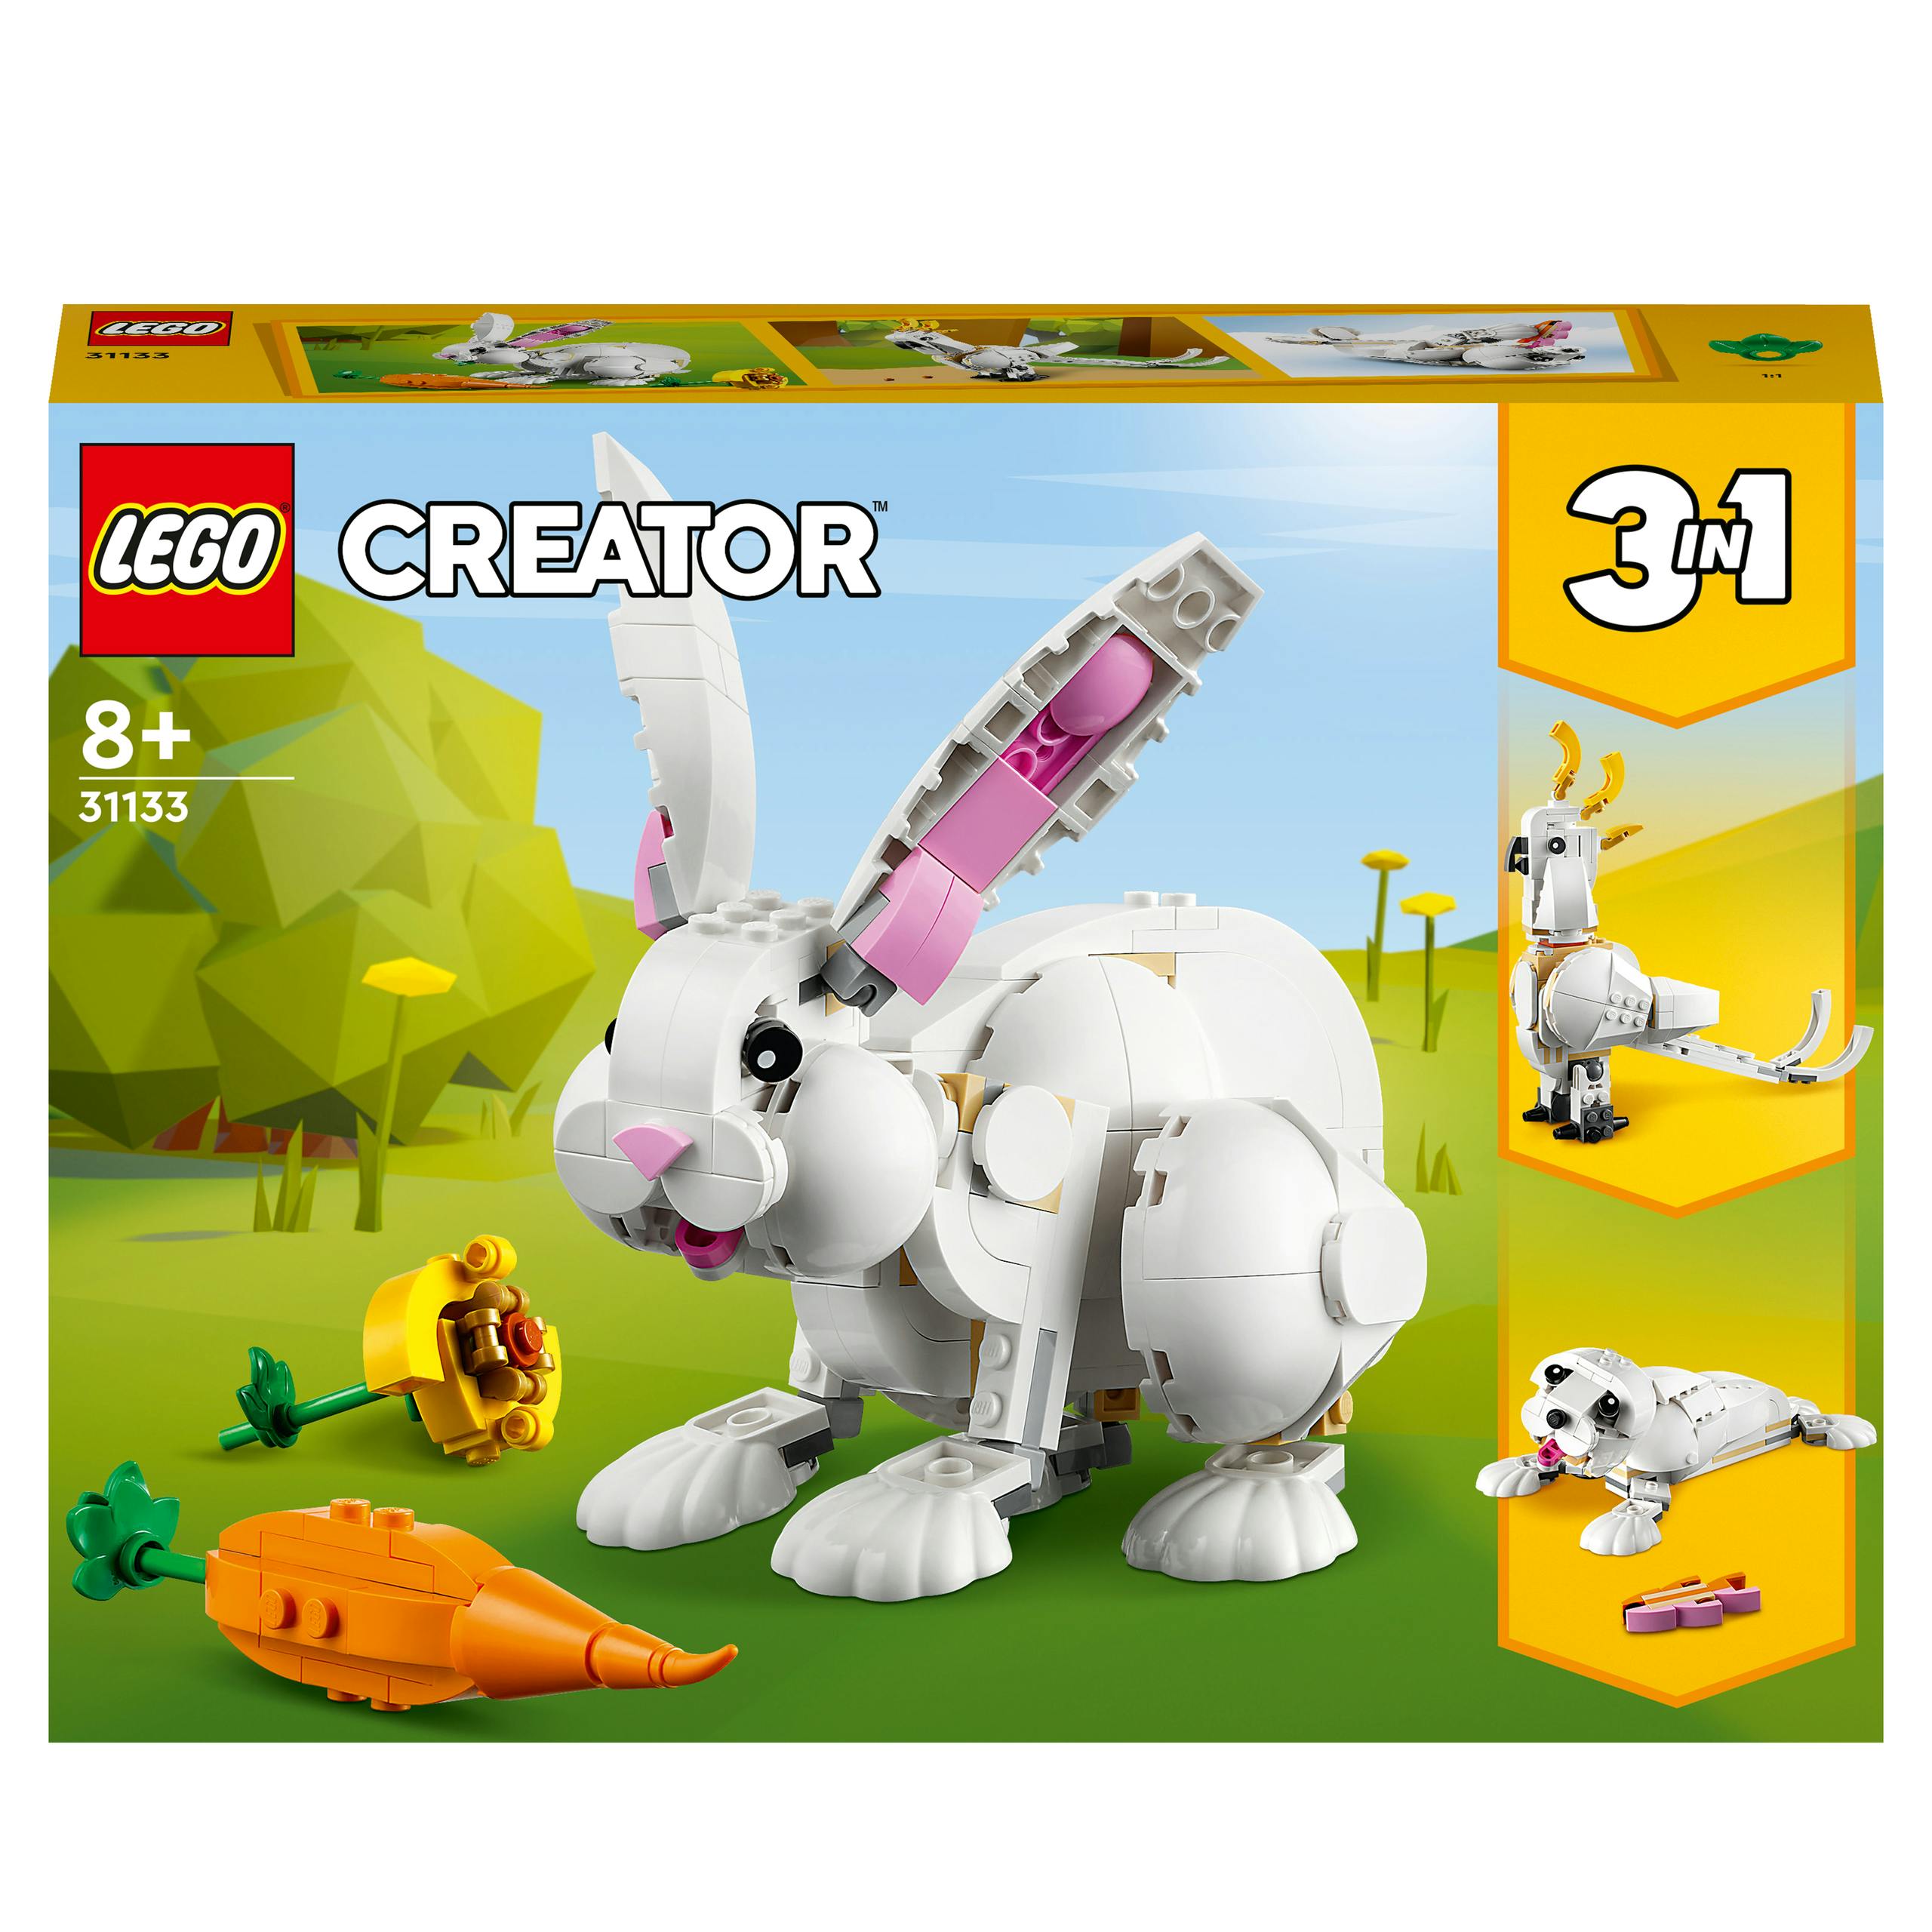 LEGO Creator 3in1 in Wit konijn (31133)